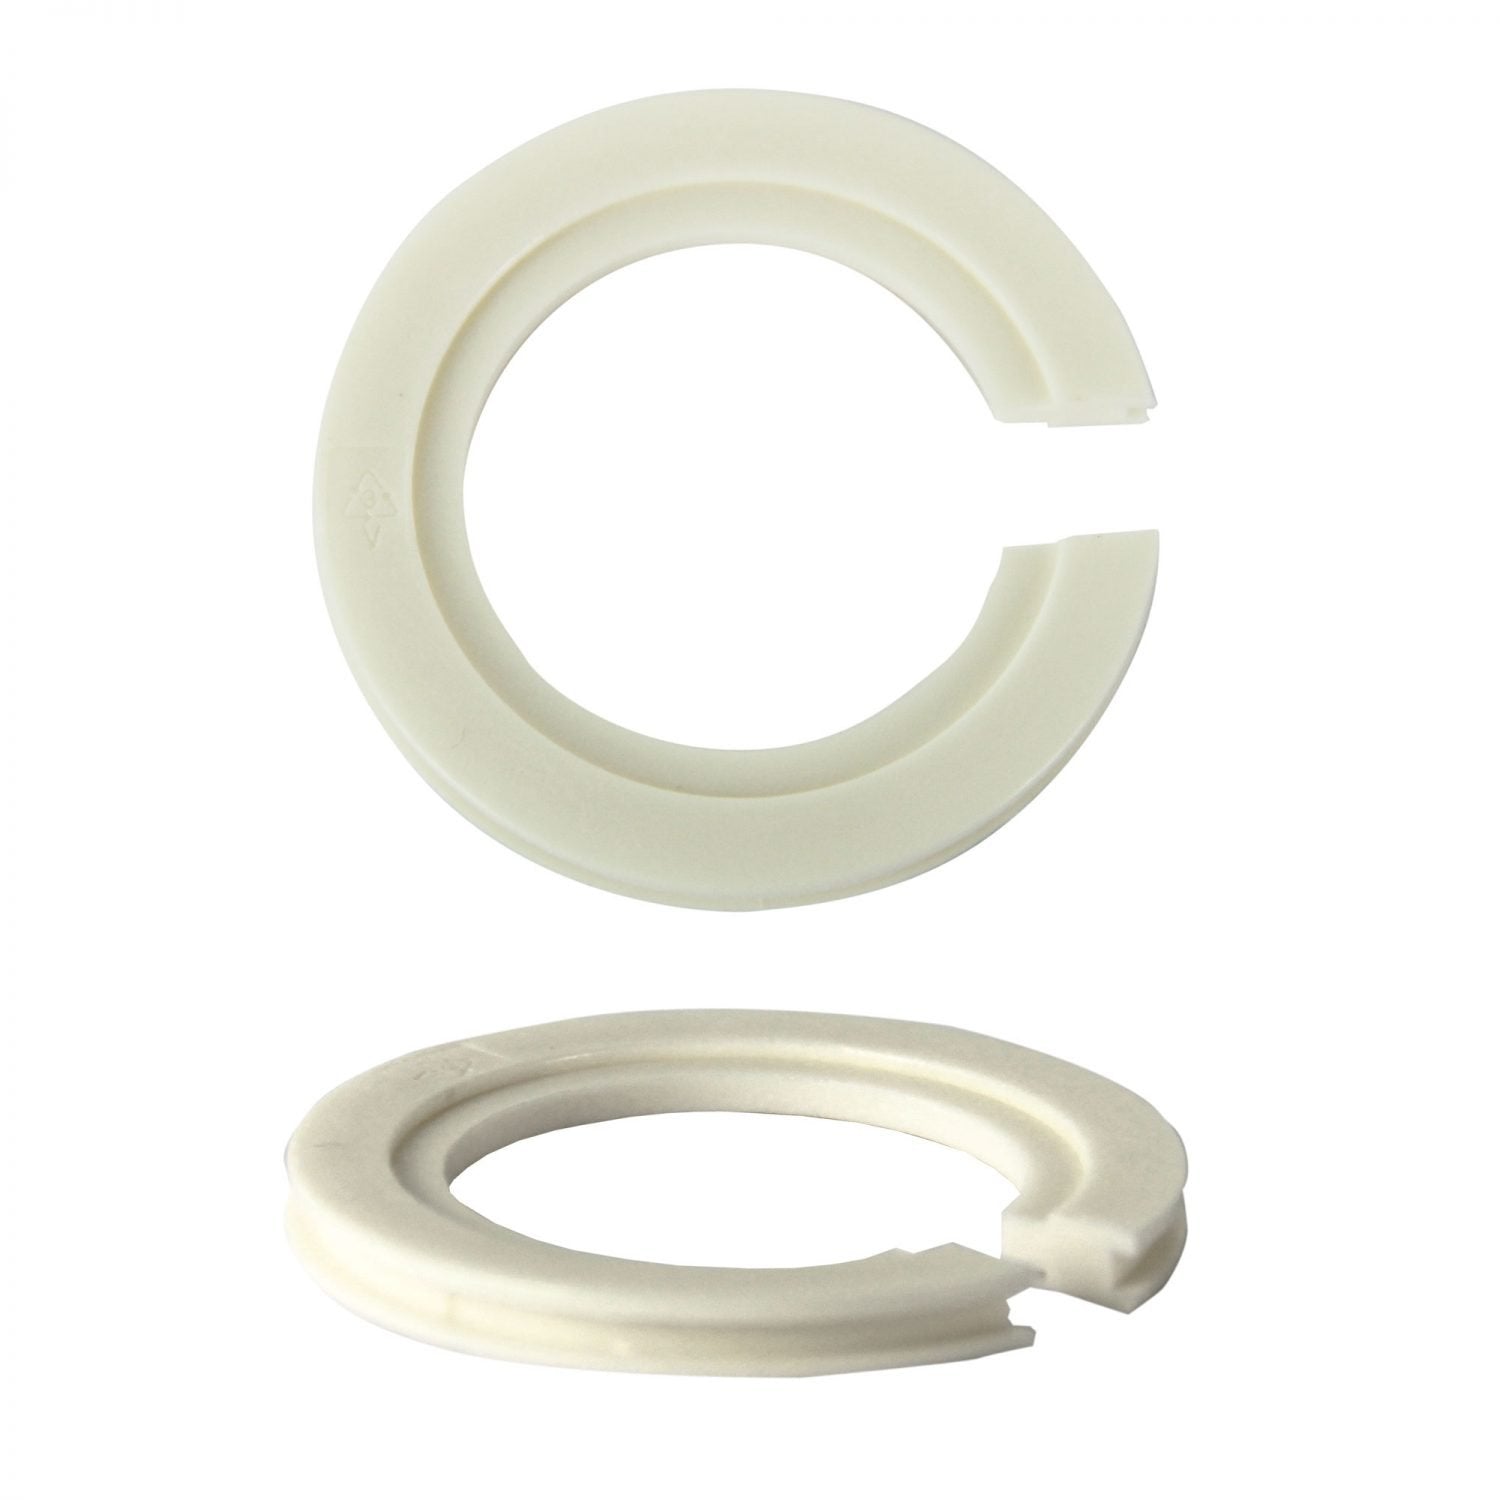 Lampshade Adapter Ring E27 -> B22 Converter - OLA16/SHADE